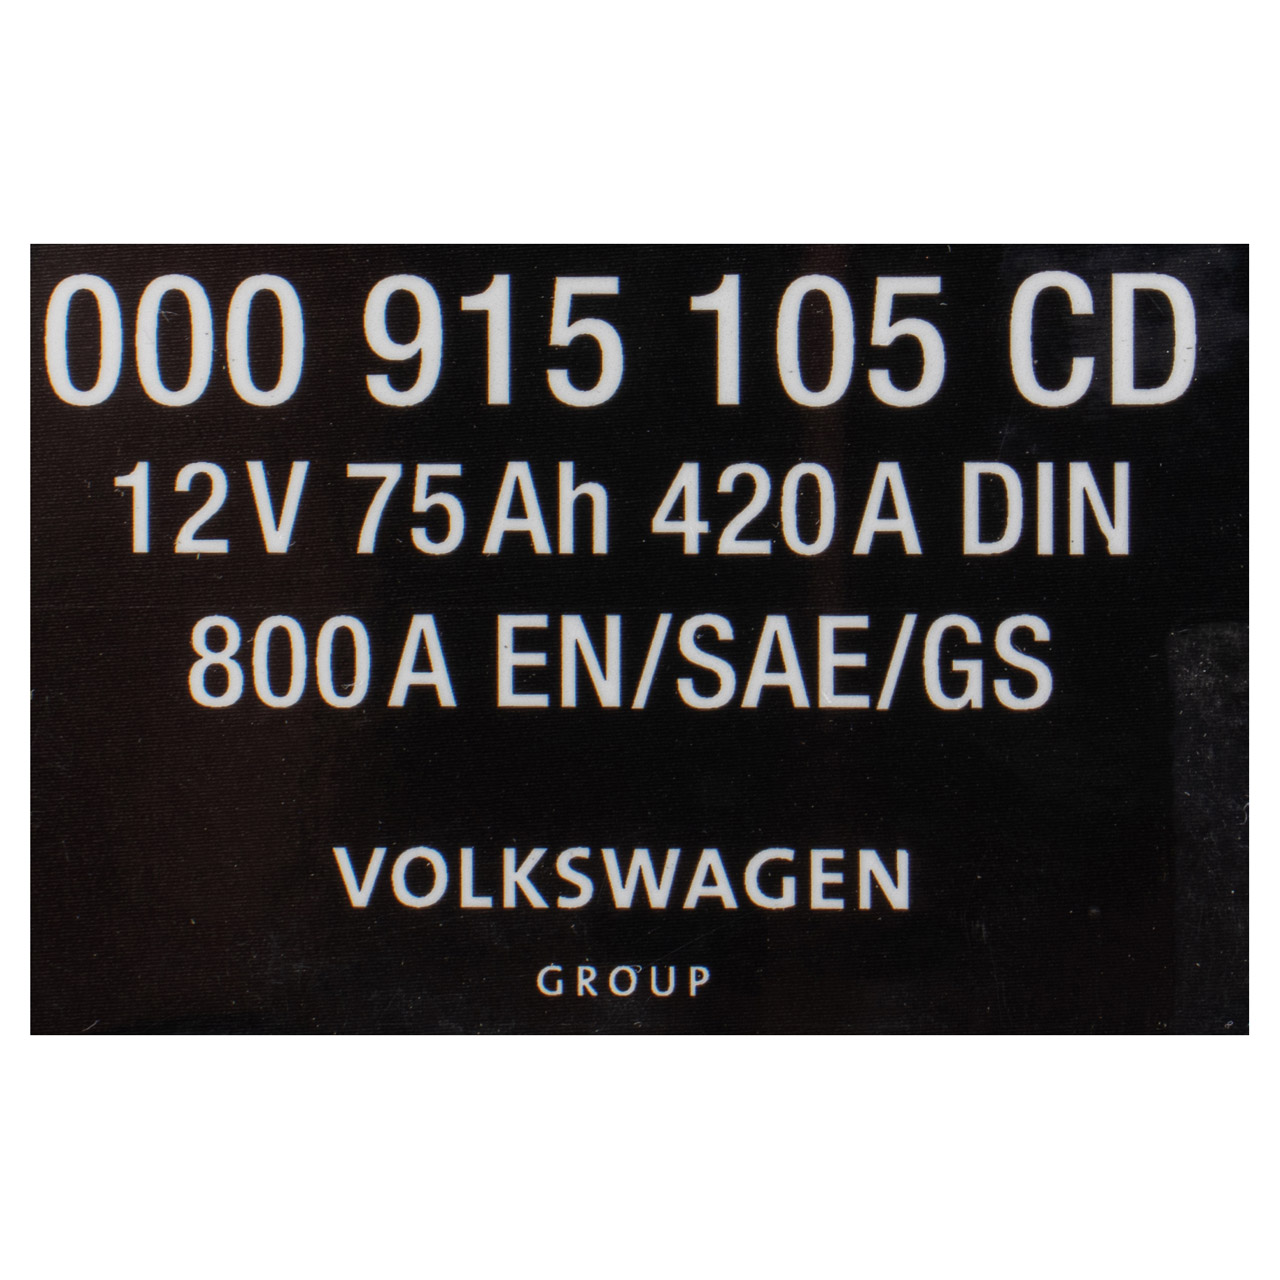 ORIGINAL VW AUDI Varta AGM Batterie 12V 75Ah 420A 800A 000915105CD